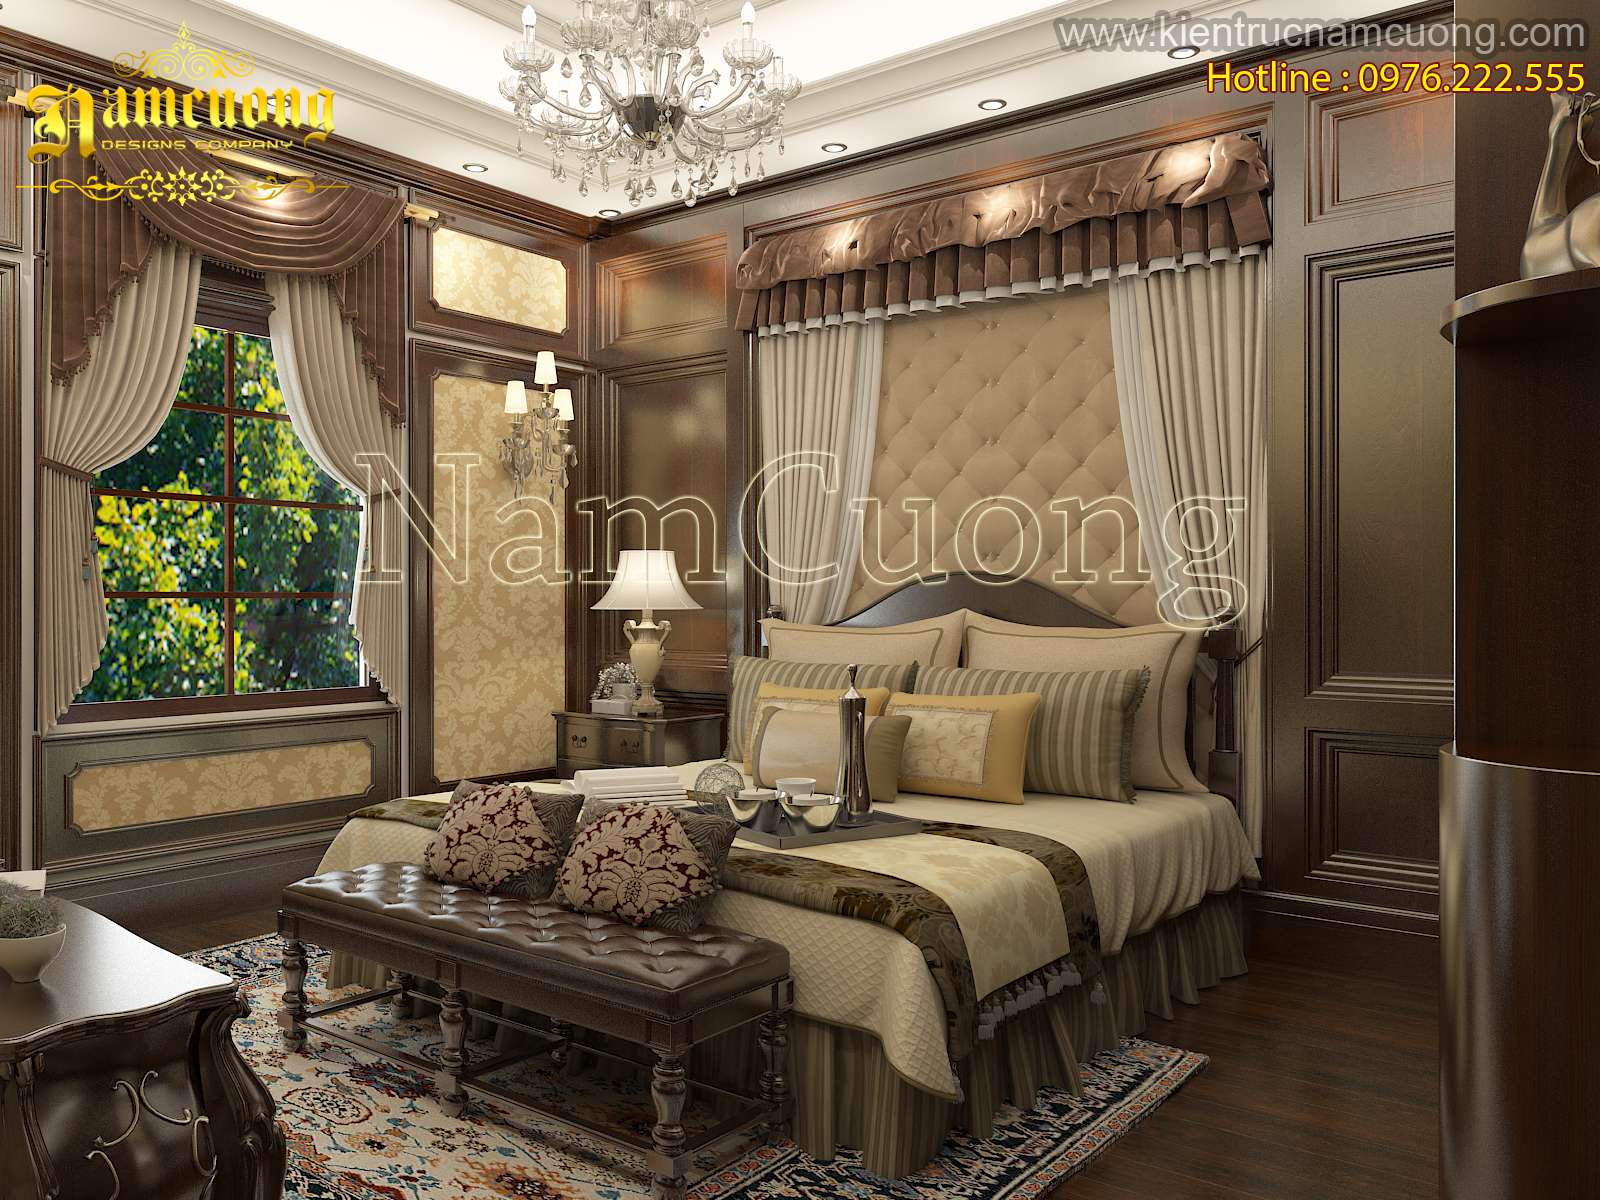 Những mẫu phòng ngủ đẹp mang phong cách tân cổ điển của NCDC